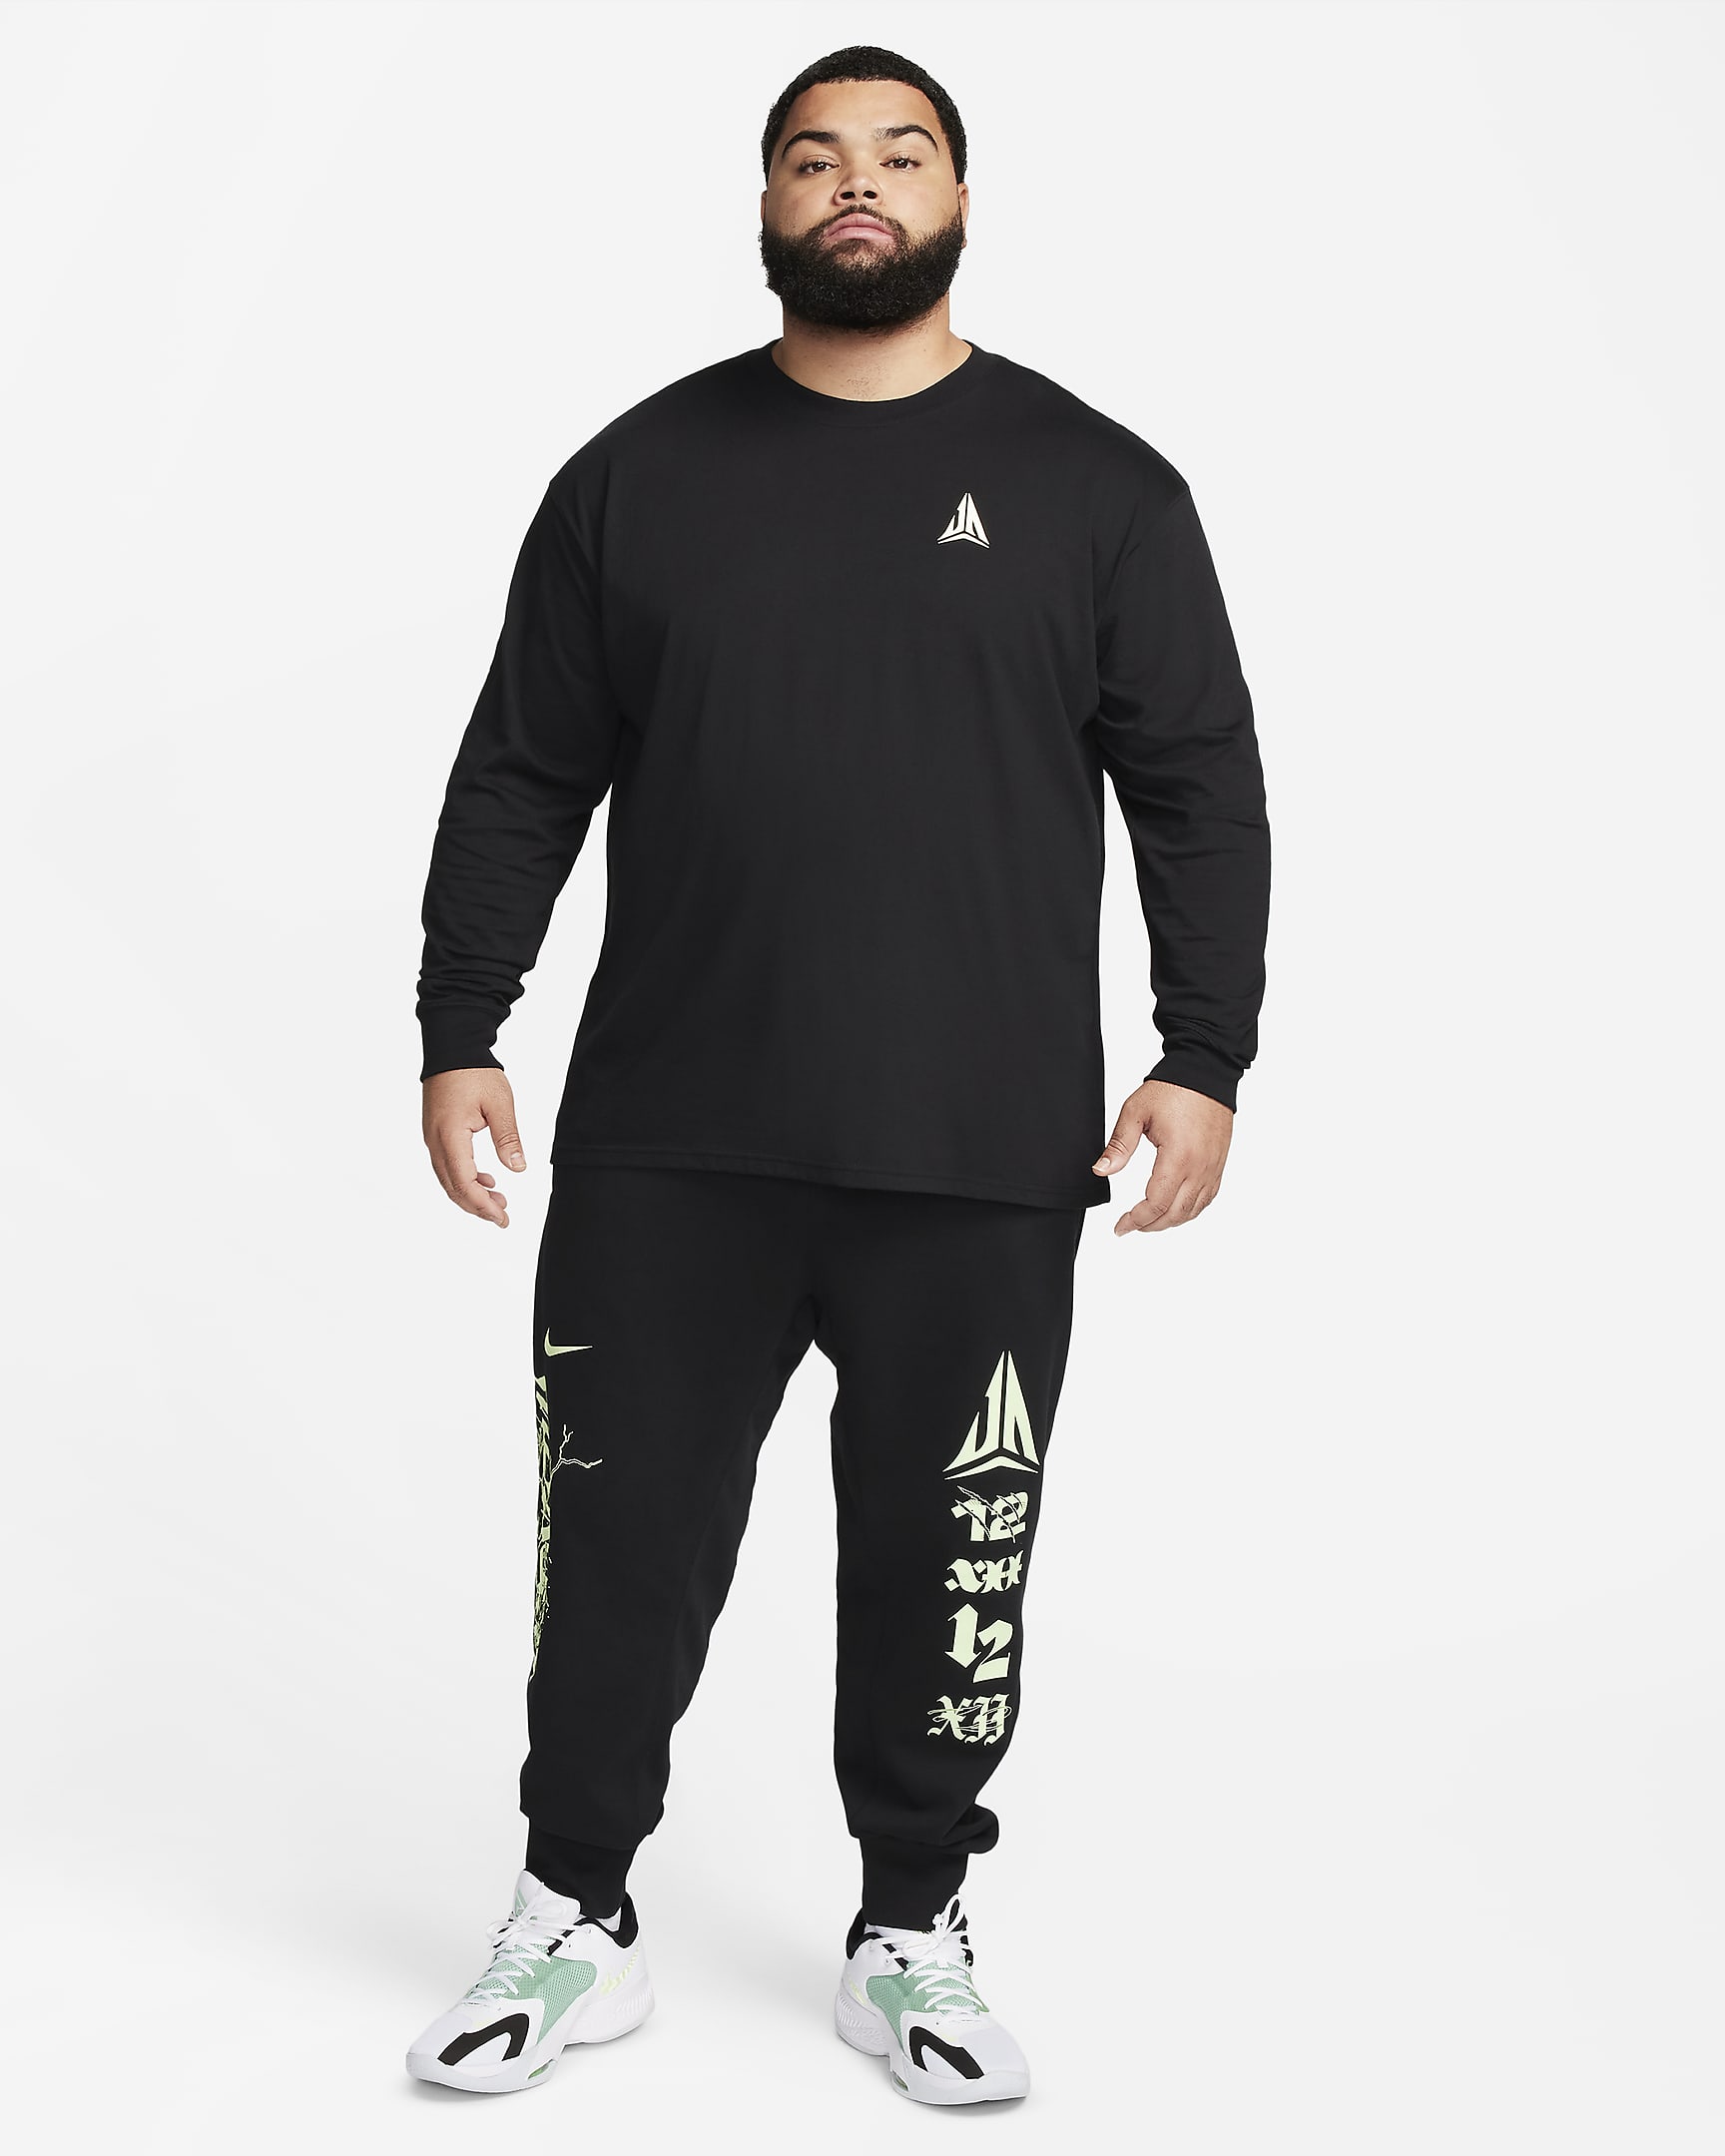 JA Men's Max90 Long-Sleeve T-Shirt. Nike UK